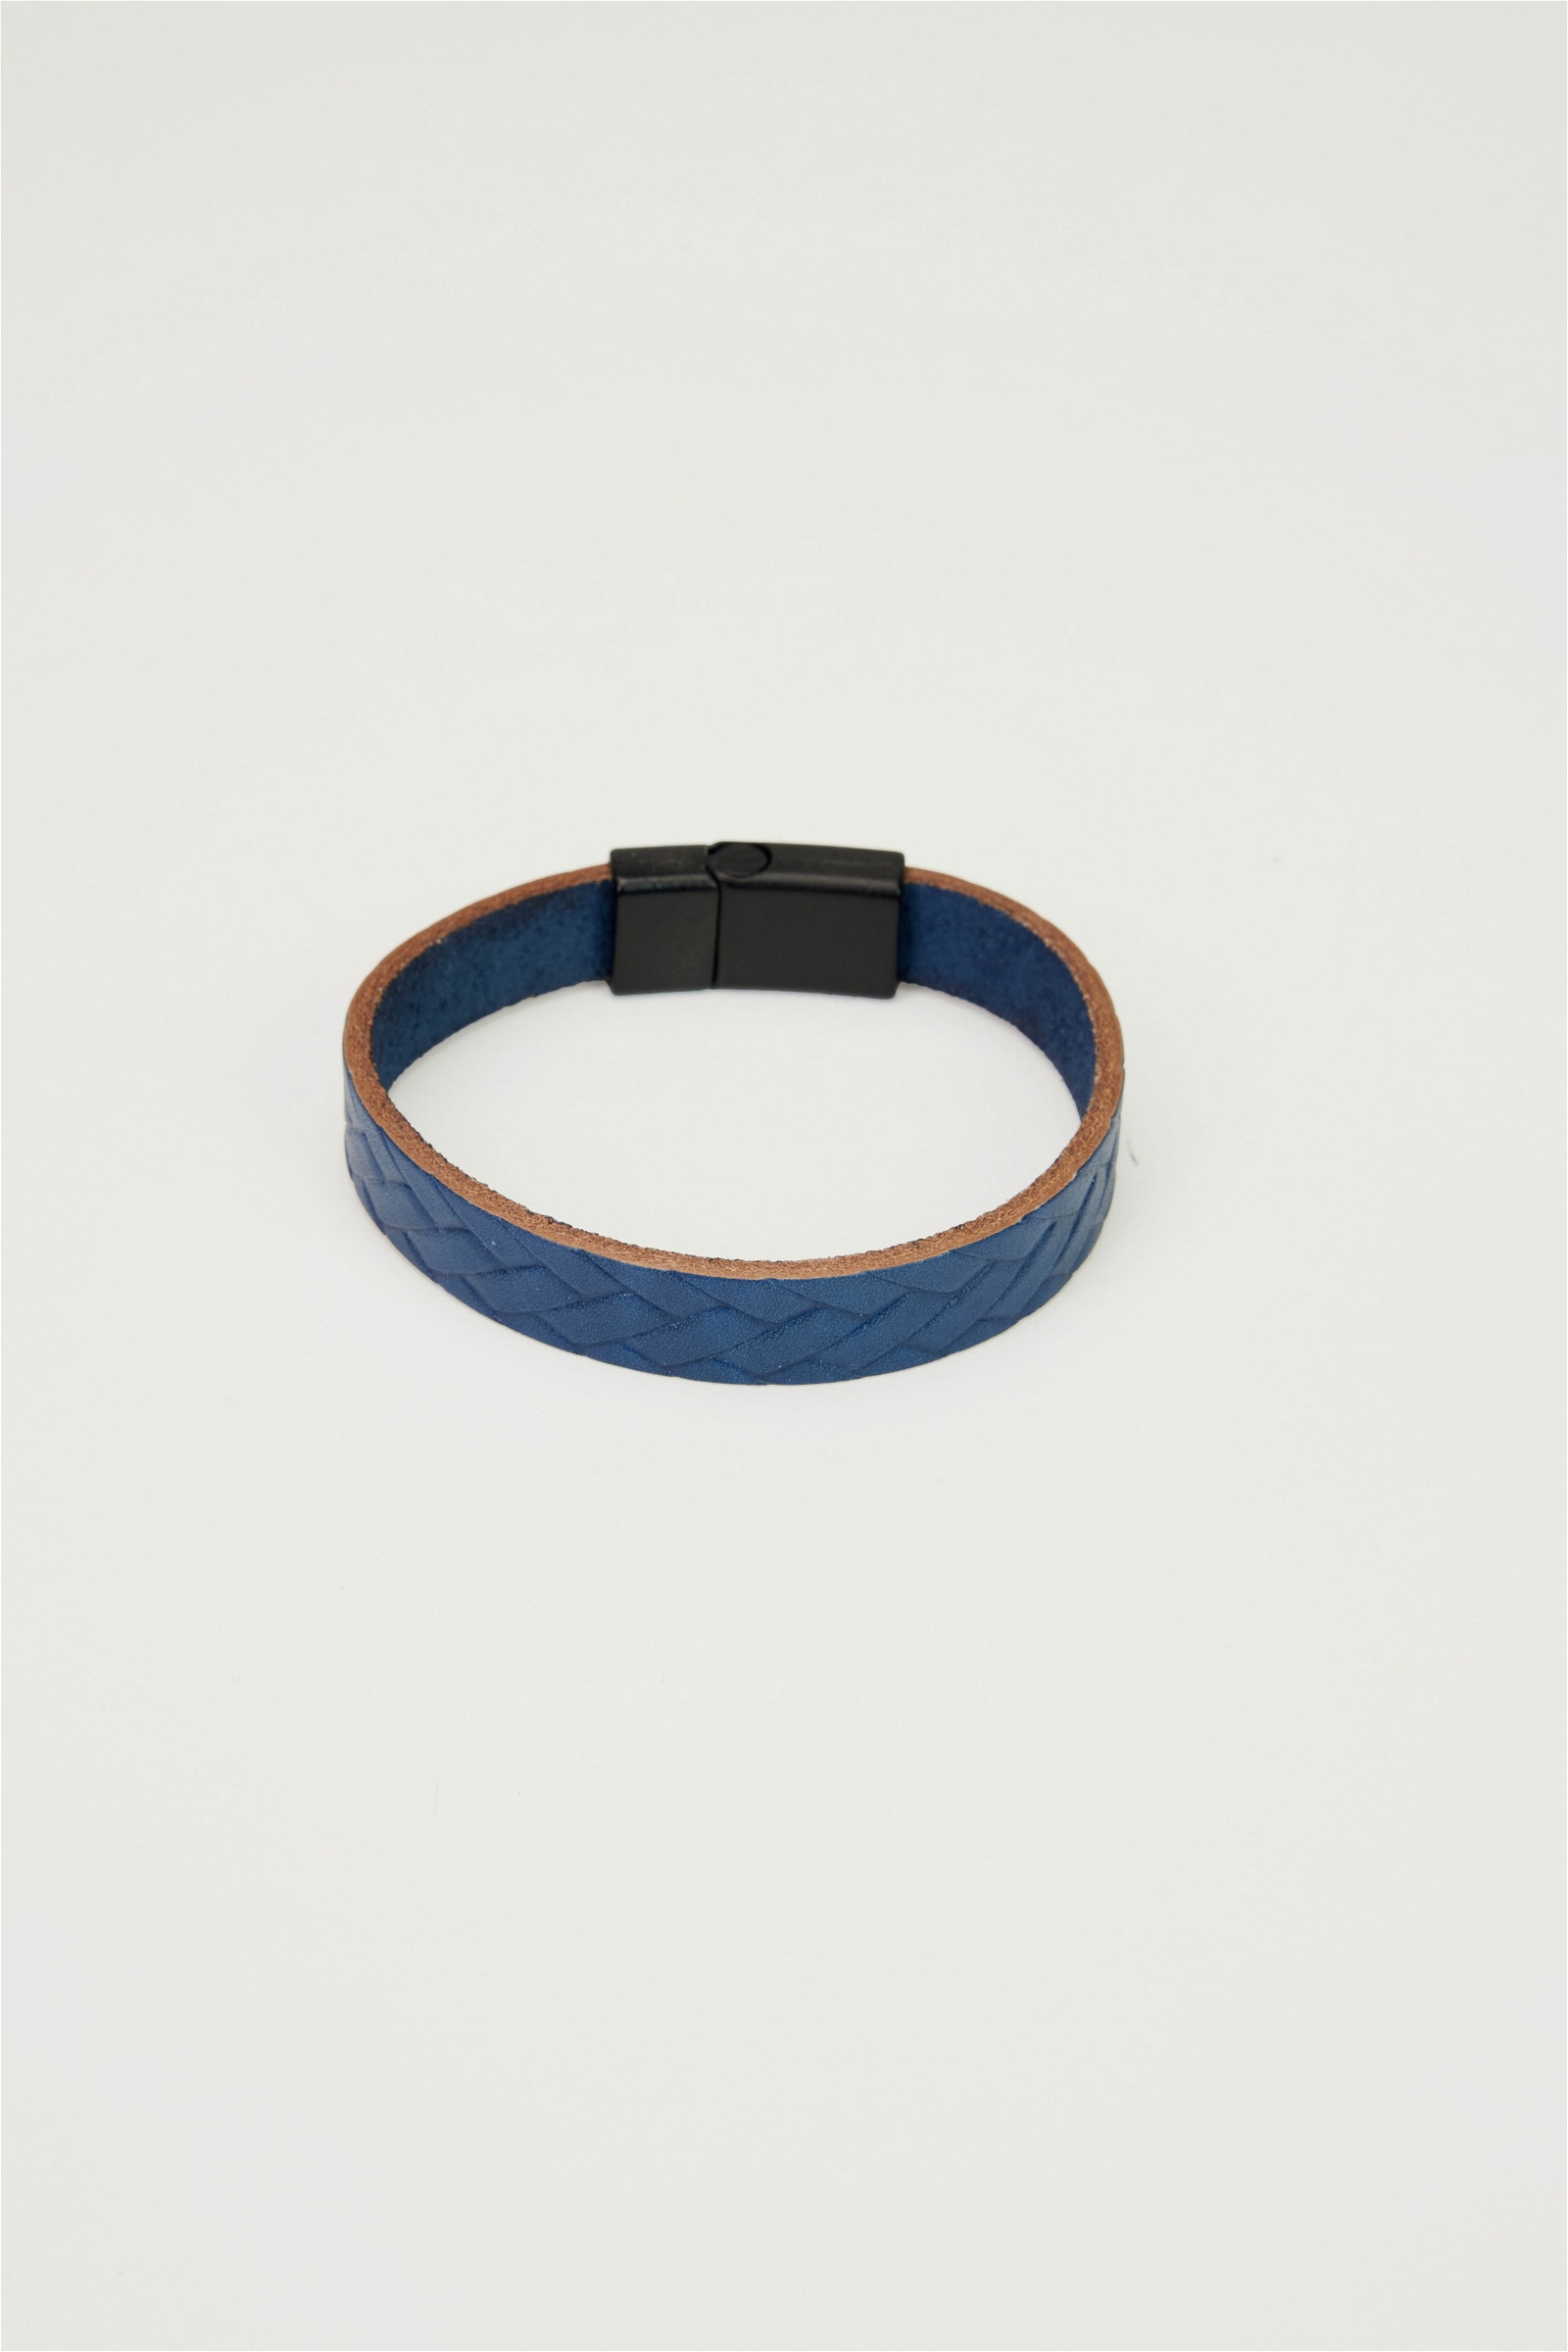 Leather Navy Blue Bracelet